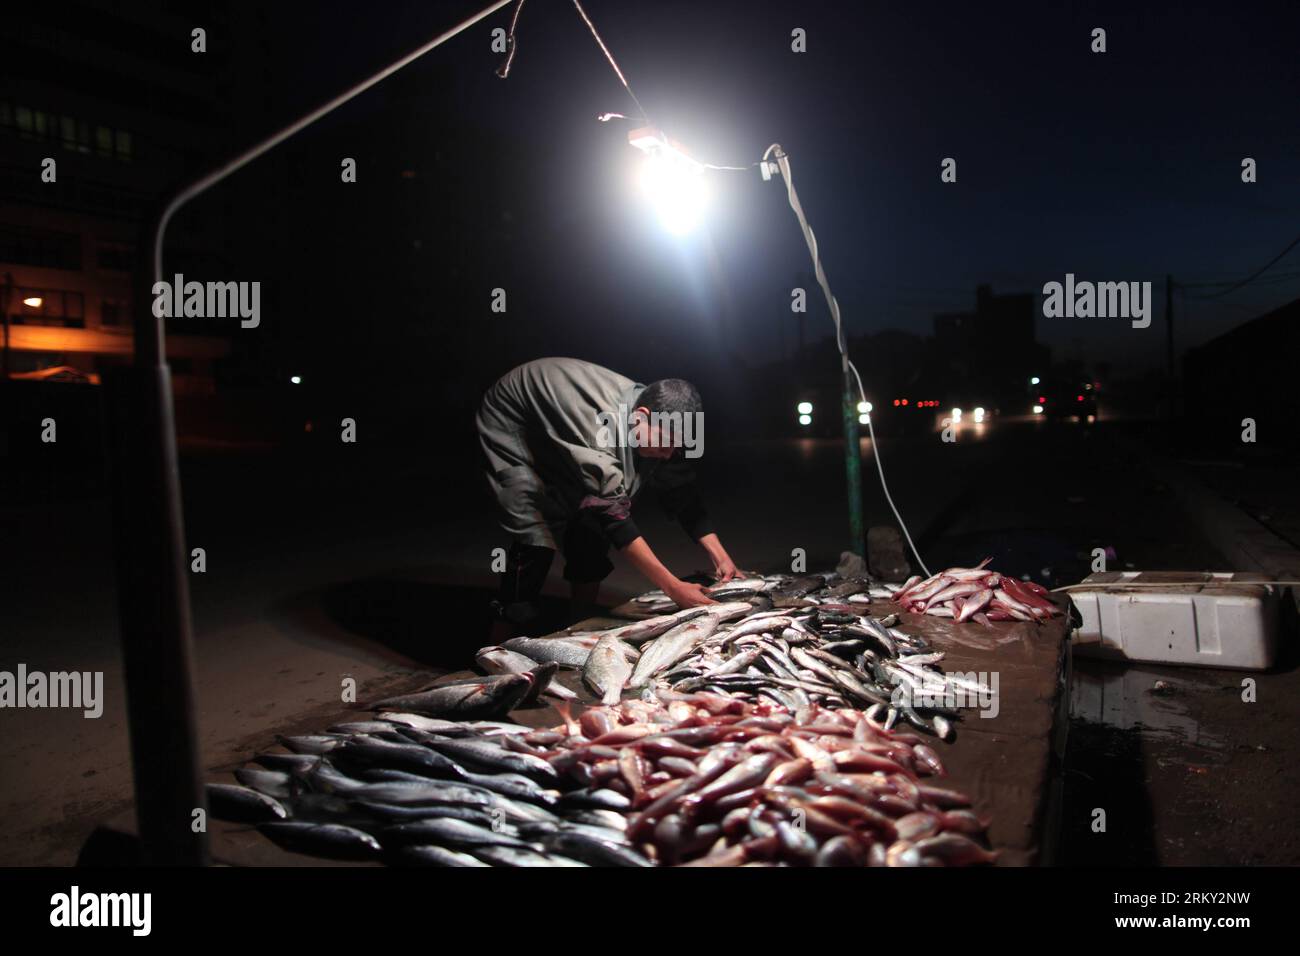 Bildnummer: 59127629  Datum: 23.01.2013  Copyright: imago/Xinhua (130124) -- GAZA, Jan. 23, 2013 (Xinhua) -- A Palestinian fisherman sells fish on a beach upon his return from the sea, in Gaza City on Jan. 23, 2013. (Xinhua/Wissam Nassar) (zw) MIDEAST-GAZA-FISHERMEN PUBLICATIONxNOTxINxCHN Wirtschaft Arbeit Fisch Fischer Verkauf Fischstand x0x xdd 2013 quer     59127629 Date 23 01 2013 Copyright Imago XINHUA  Gaza Jan 23 2013 XINHUA a PALESTINIAN Fisherman sells Fish ON a Beach UPON His Return from The Sea in Gaza City ON Jan 23 2013 XINHUA Wissam Nassar ZW Mideast Gaza Fishermen PUBLICATIONxNO Stock Photo